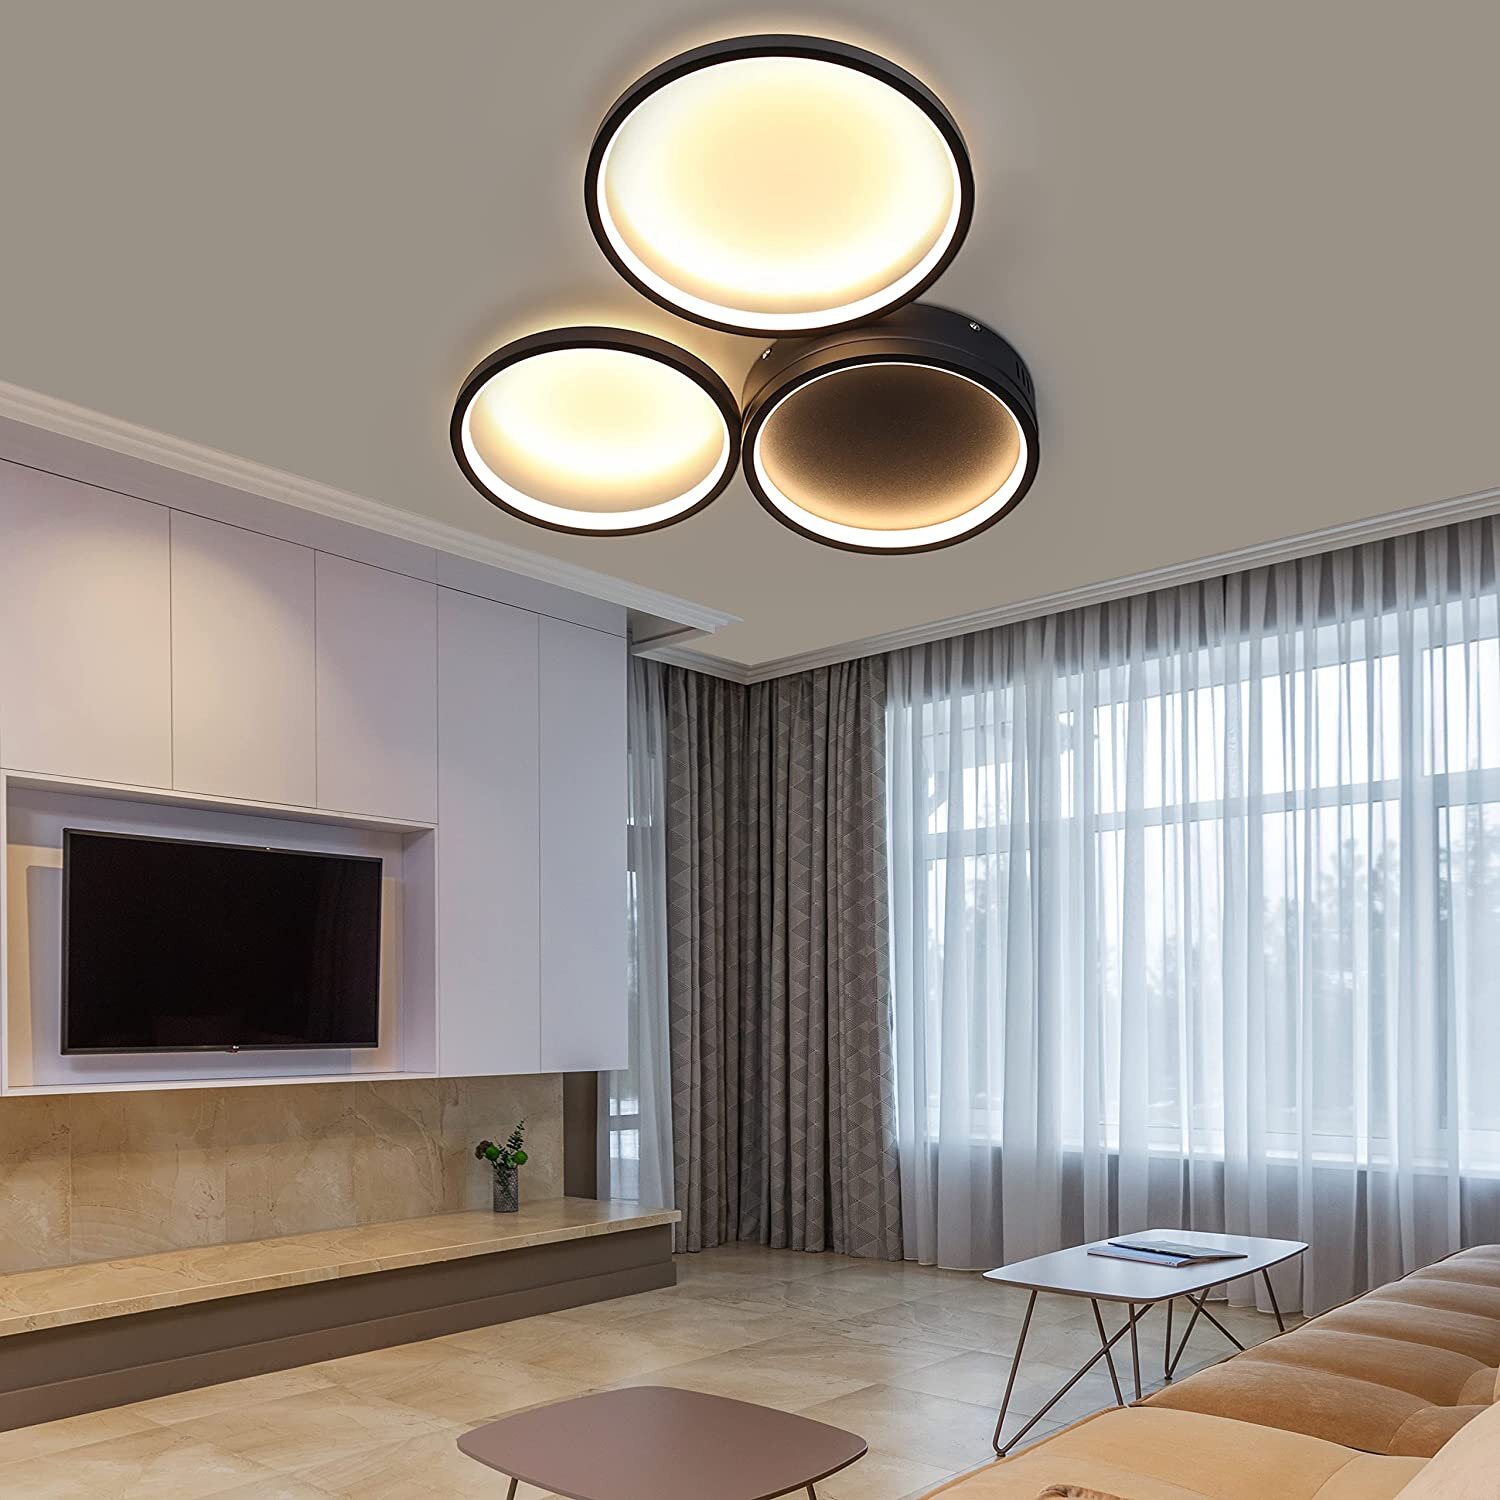 Kreise LED Design Decken Leuchten Wohn Schlaf Zimmer Raum Flur Dielen Büro Lampe 